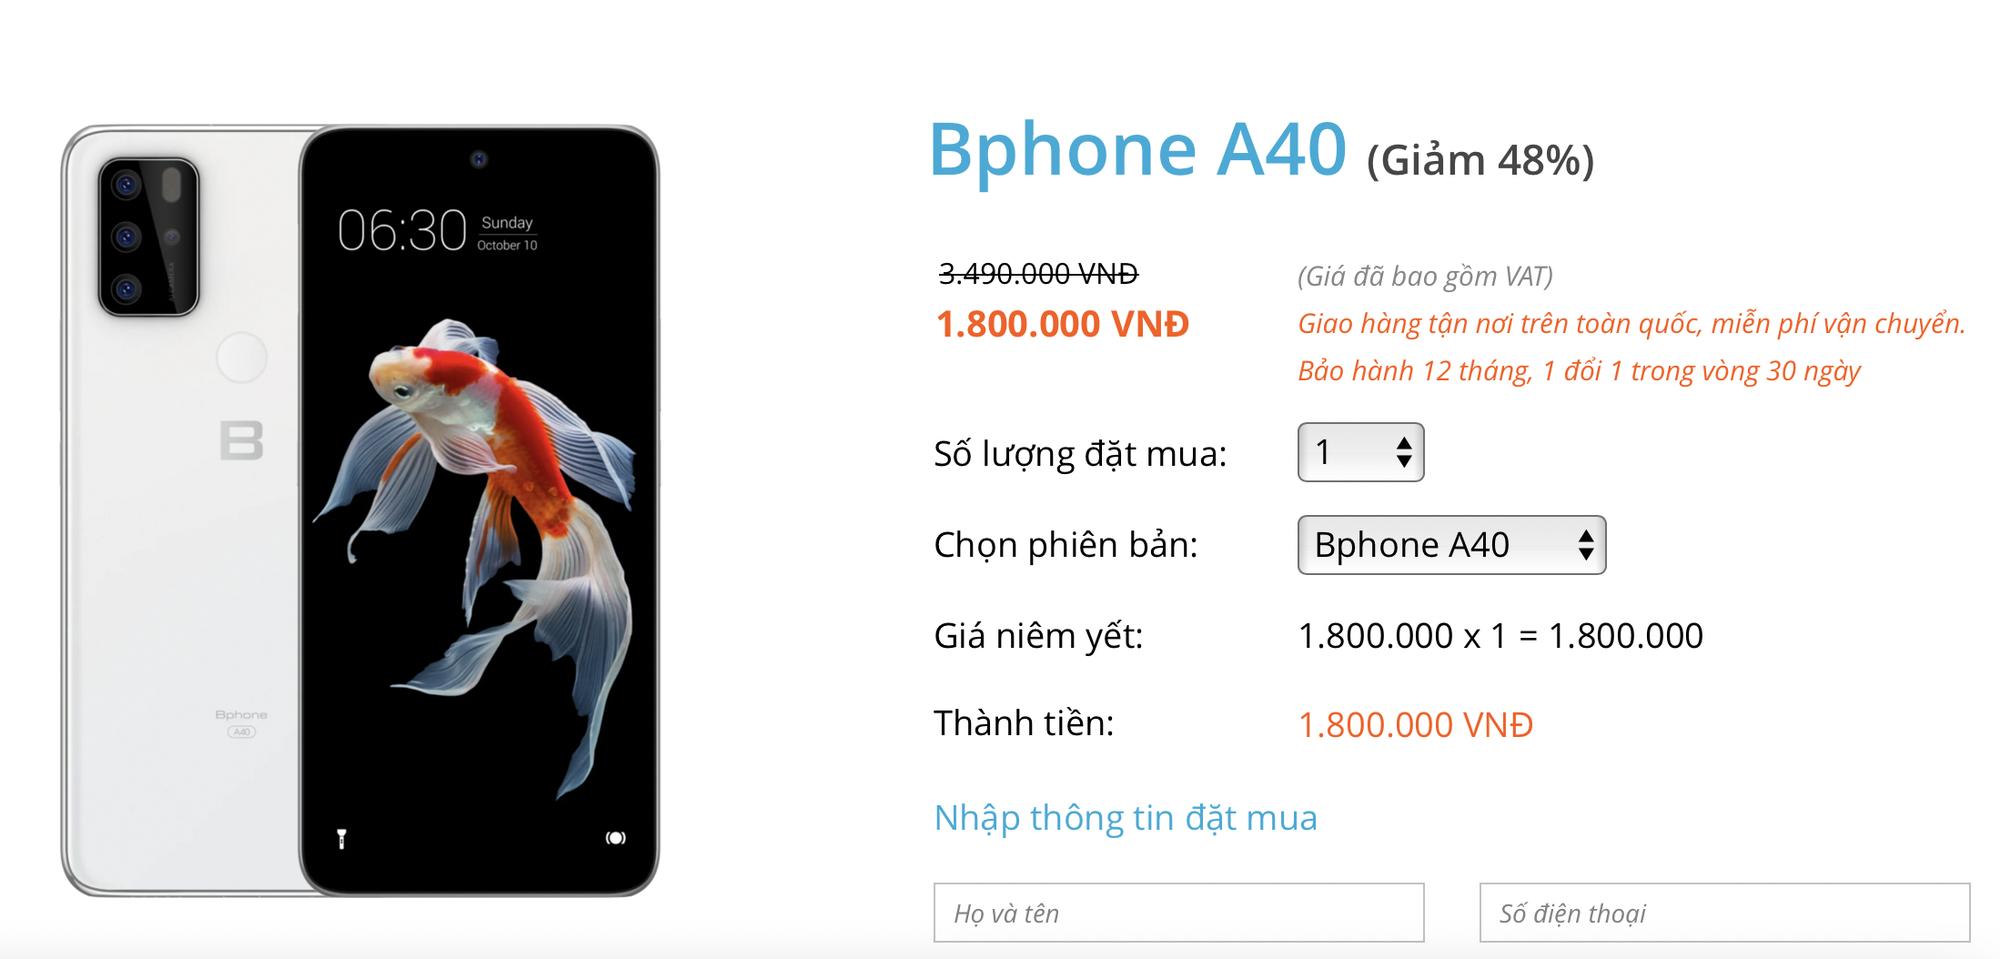 Bán Bphone giá chỉ hơn 1 triệu, BKAV khiến “vua giá rẻ” Xiaomi cũng phải run sợ - Ảnh 1.